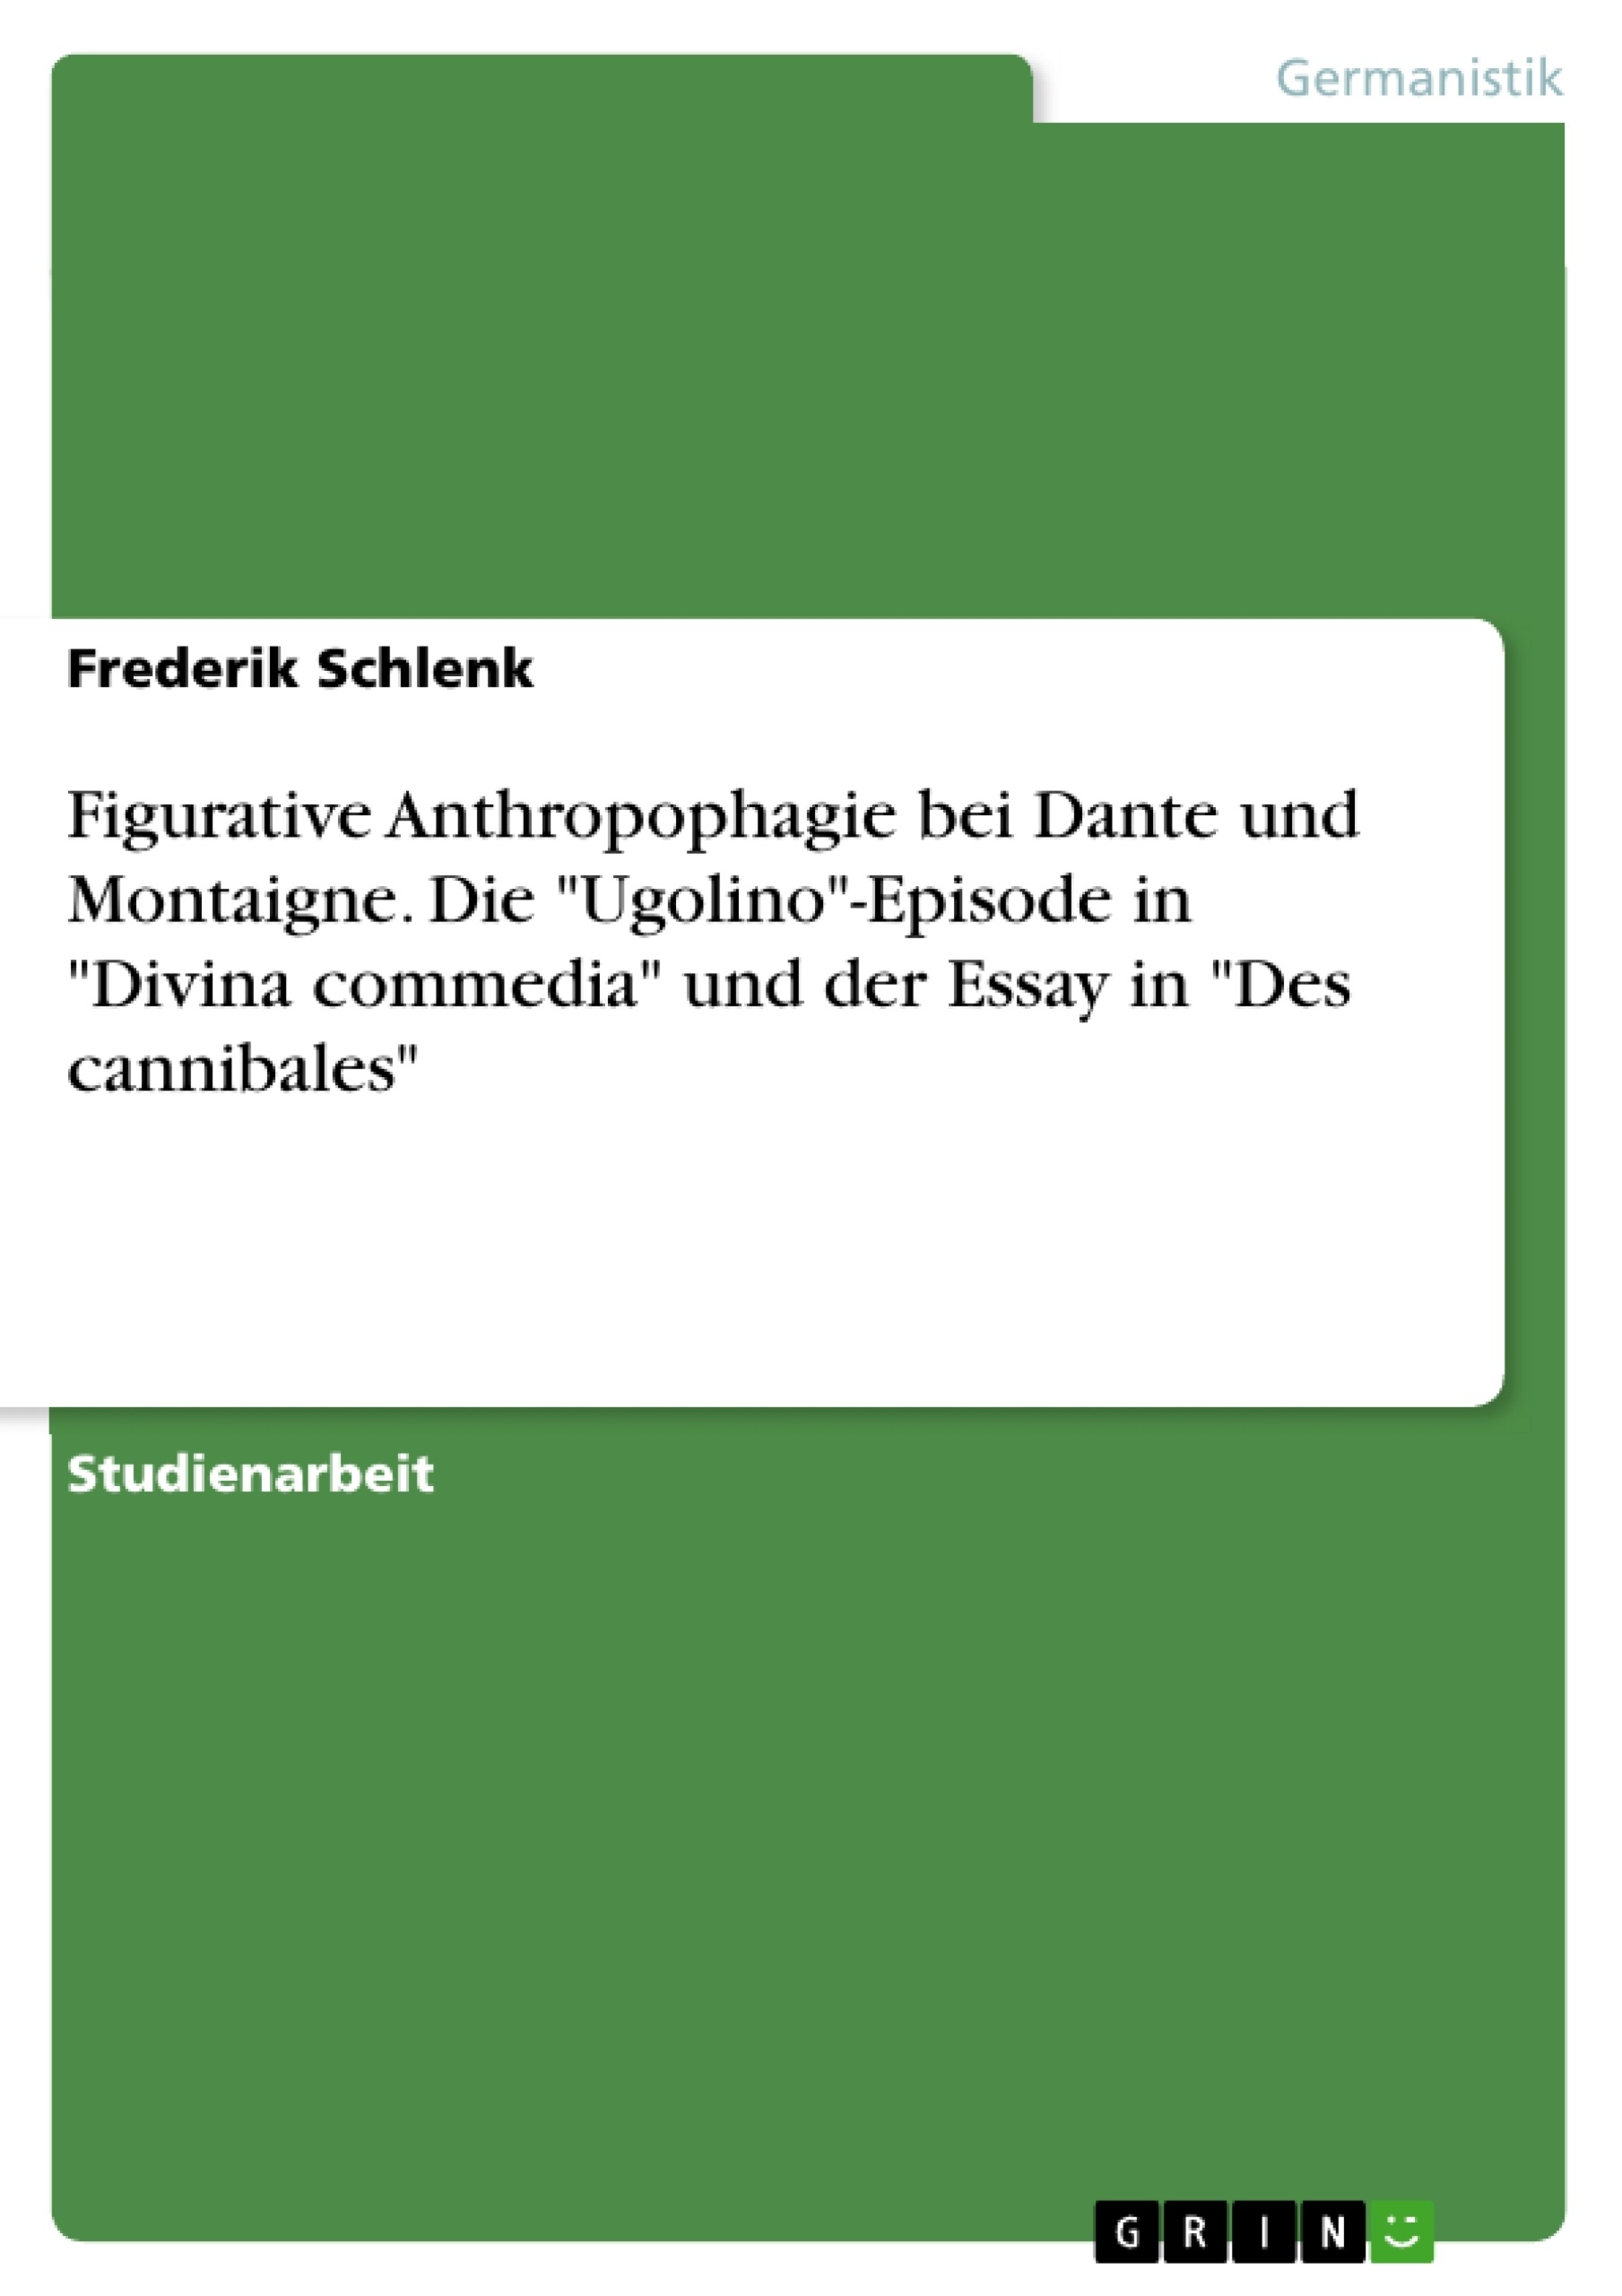 Título: Figurative Anthropophagie bei Dante und Montaigne. Die "Ugolino"-Episode in "Divina commedia" und der Essay in "Des cannibales"